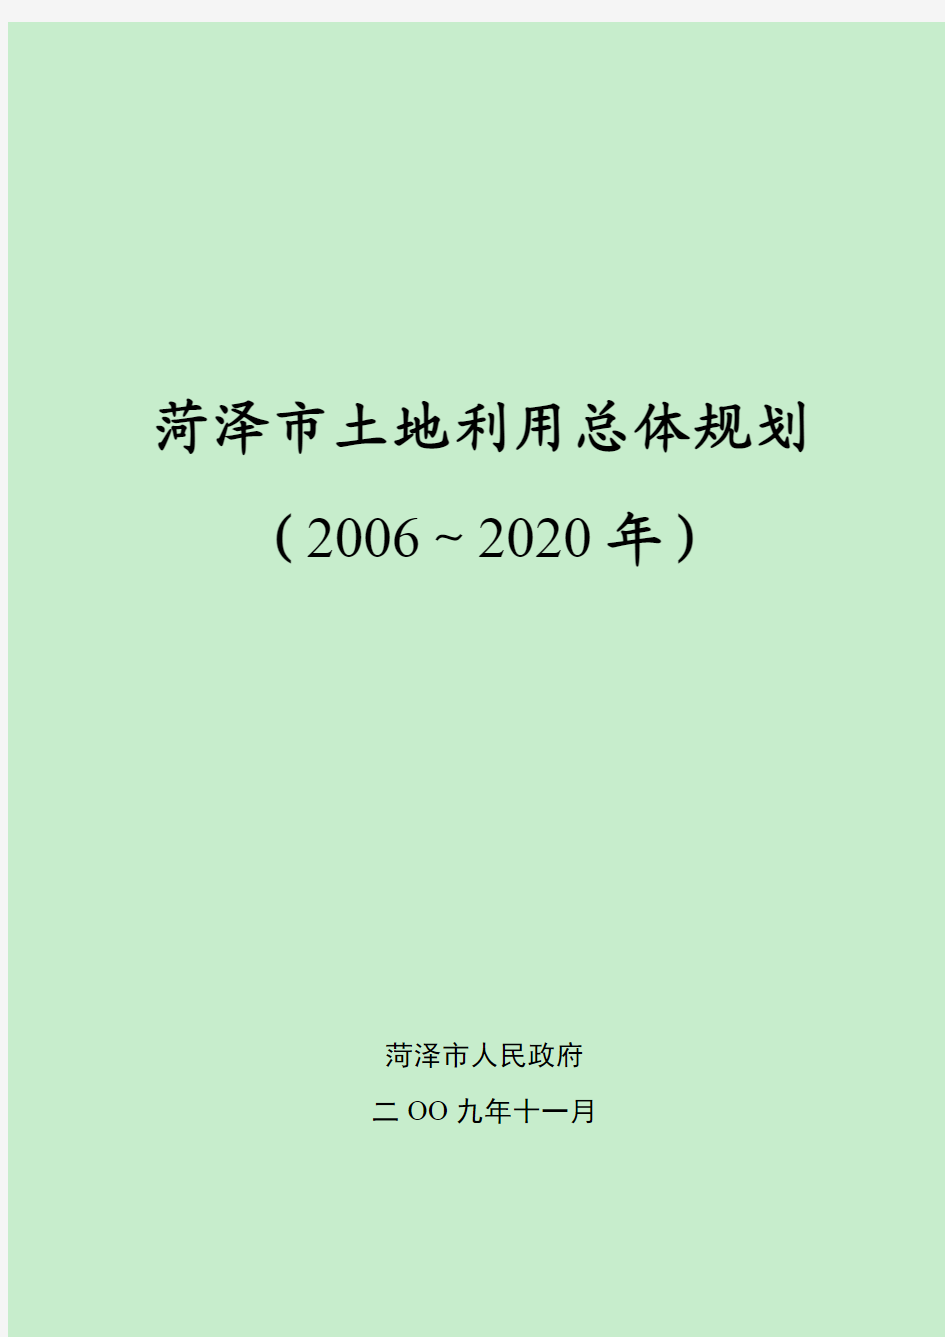 菏泽市土地利用总体规划(2006-2020)